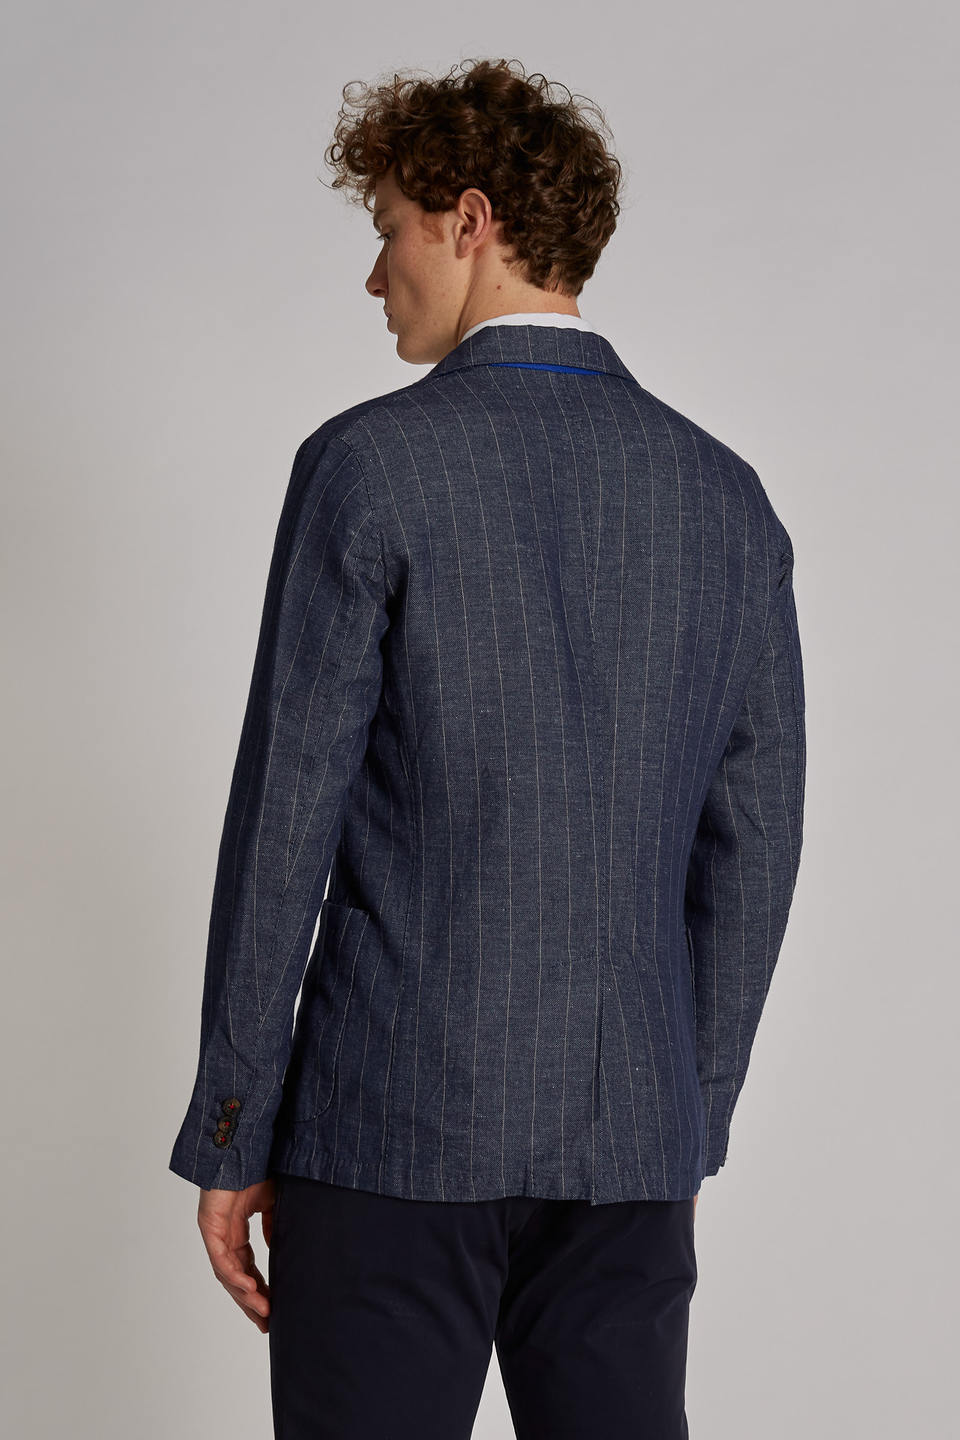 Veste homme style blazer en mélange de coton et lin coupe classique - La Martina - Official Online Shop